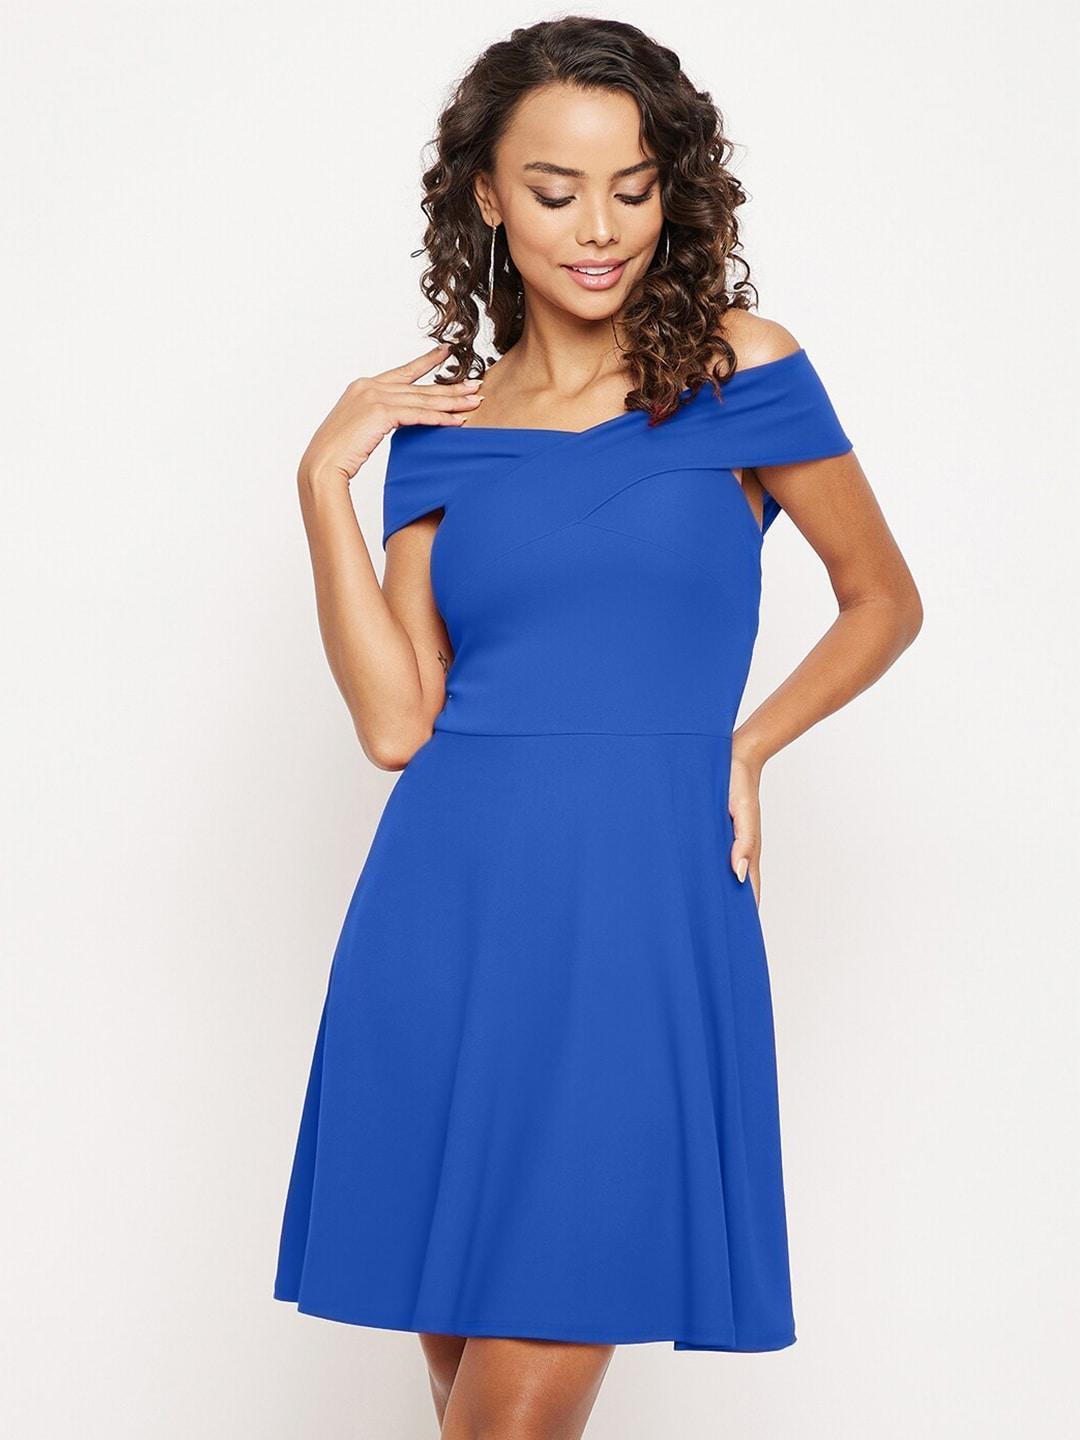 uptownie-lite-blue-off-shoulder-dress